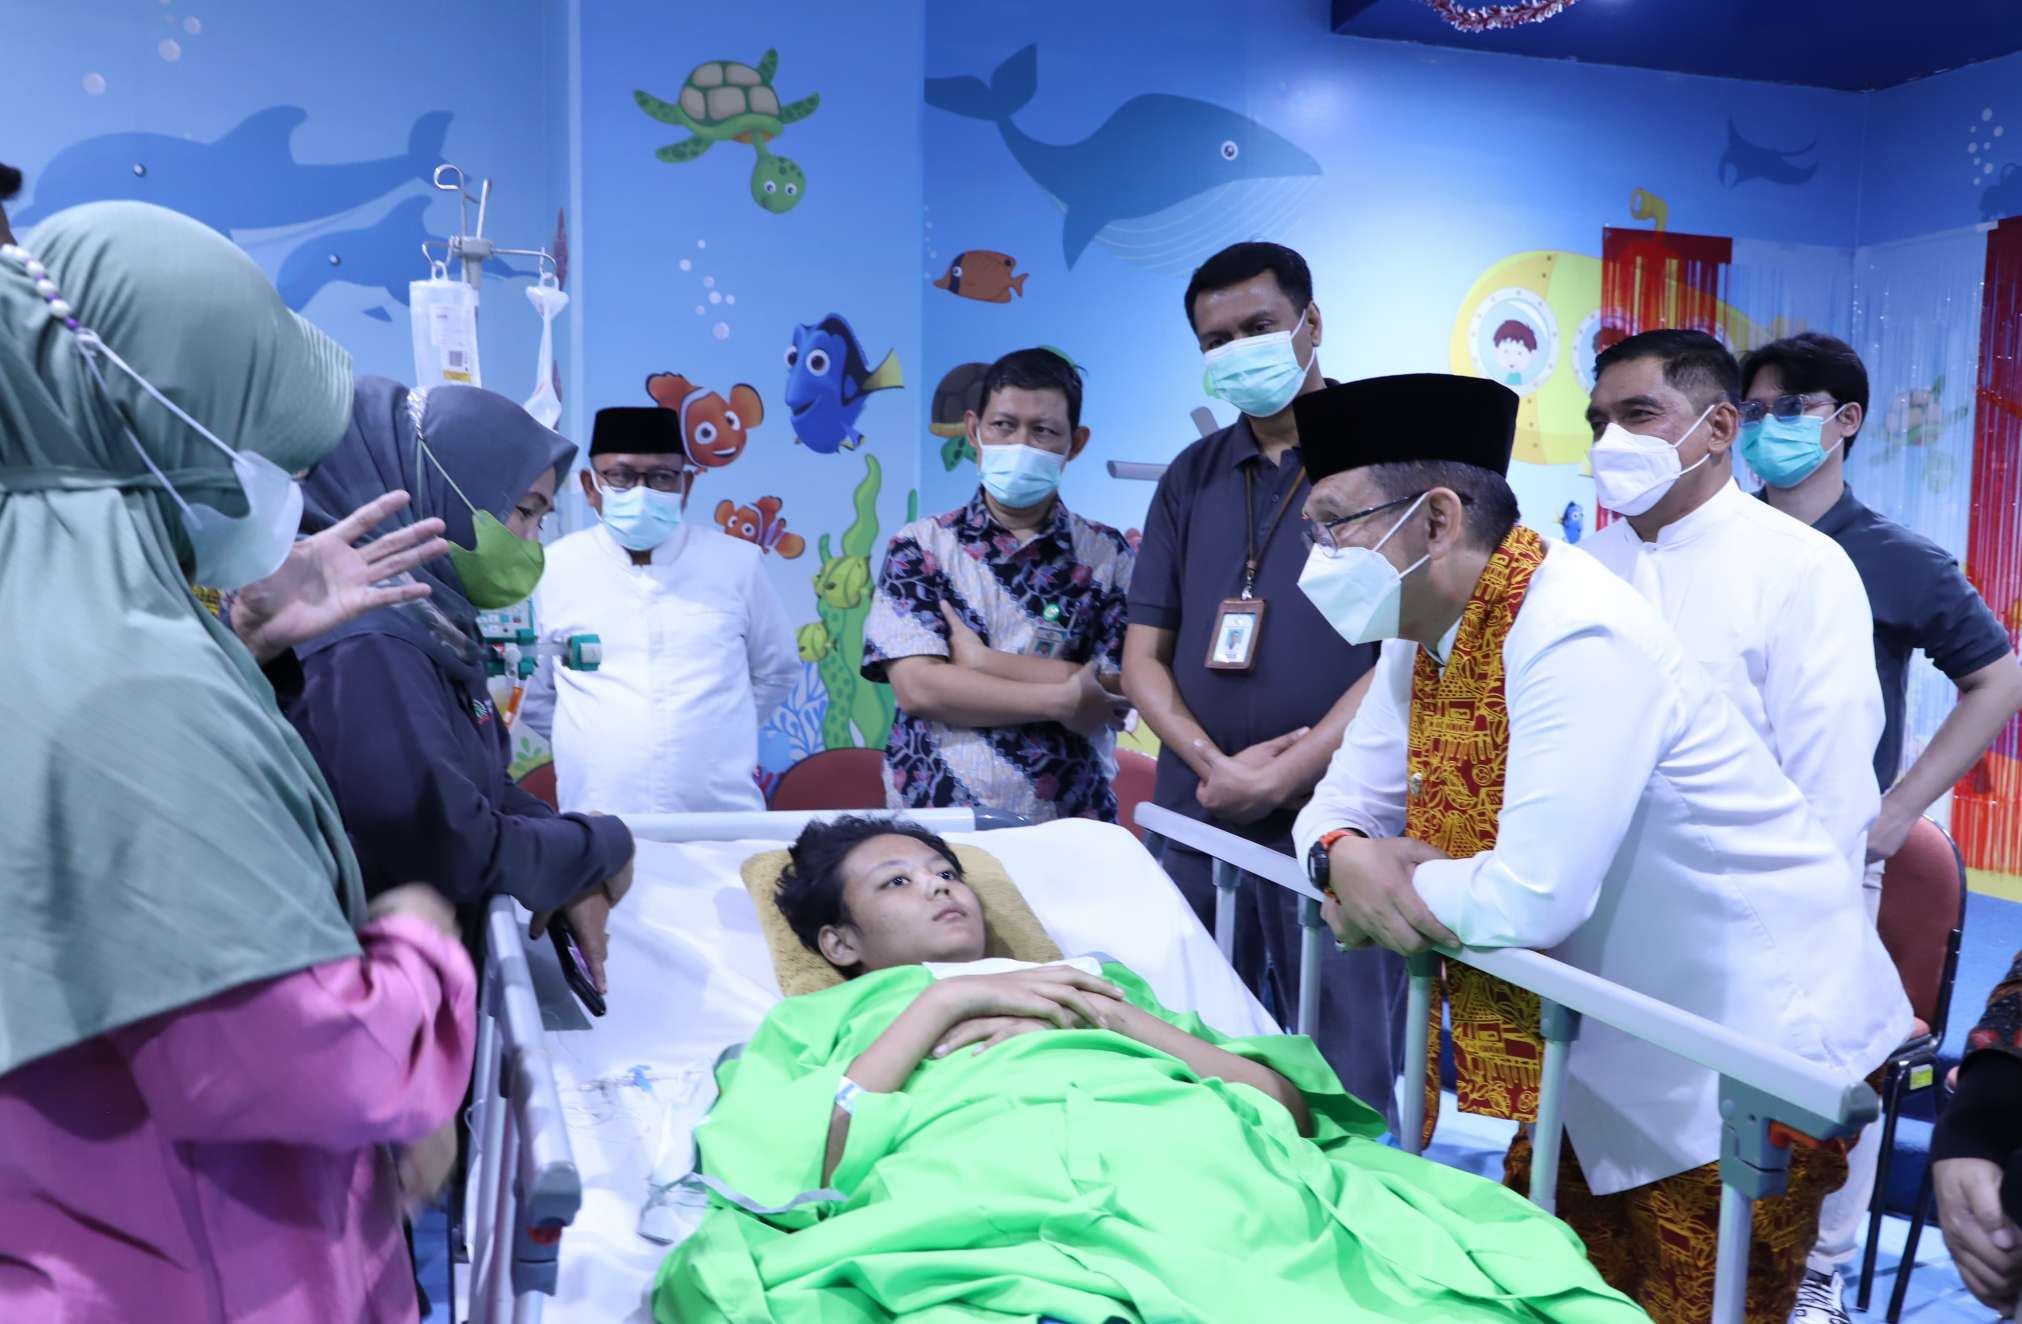 PJ Bupati Dani Ramdan Jenguk Fatir, Siswa SDN 09 Jatimulya Bekasi yang Menjalani Operasi Amputasi Kaki